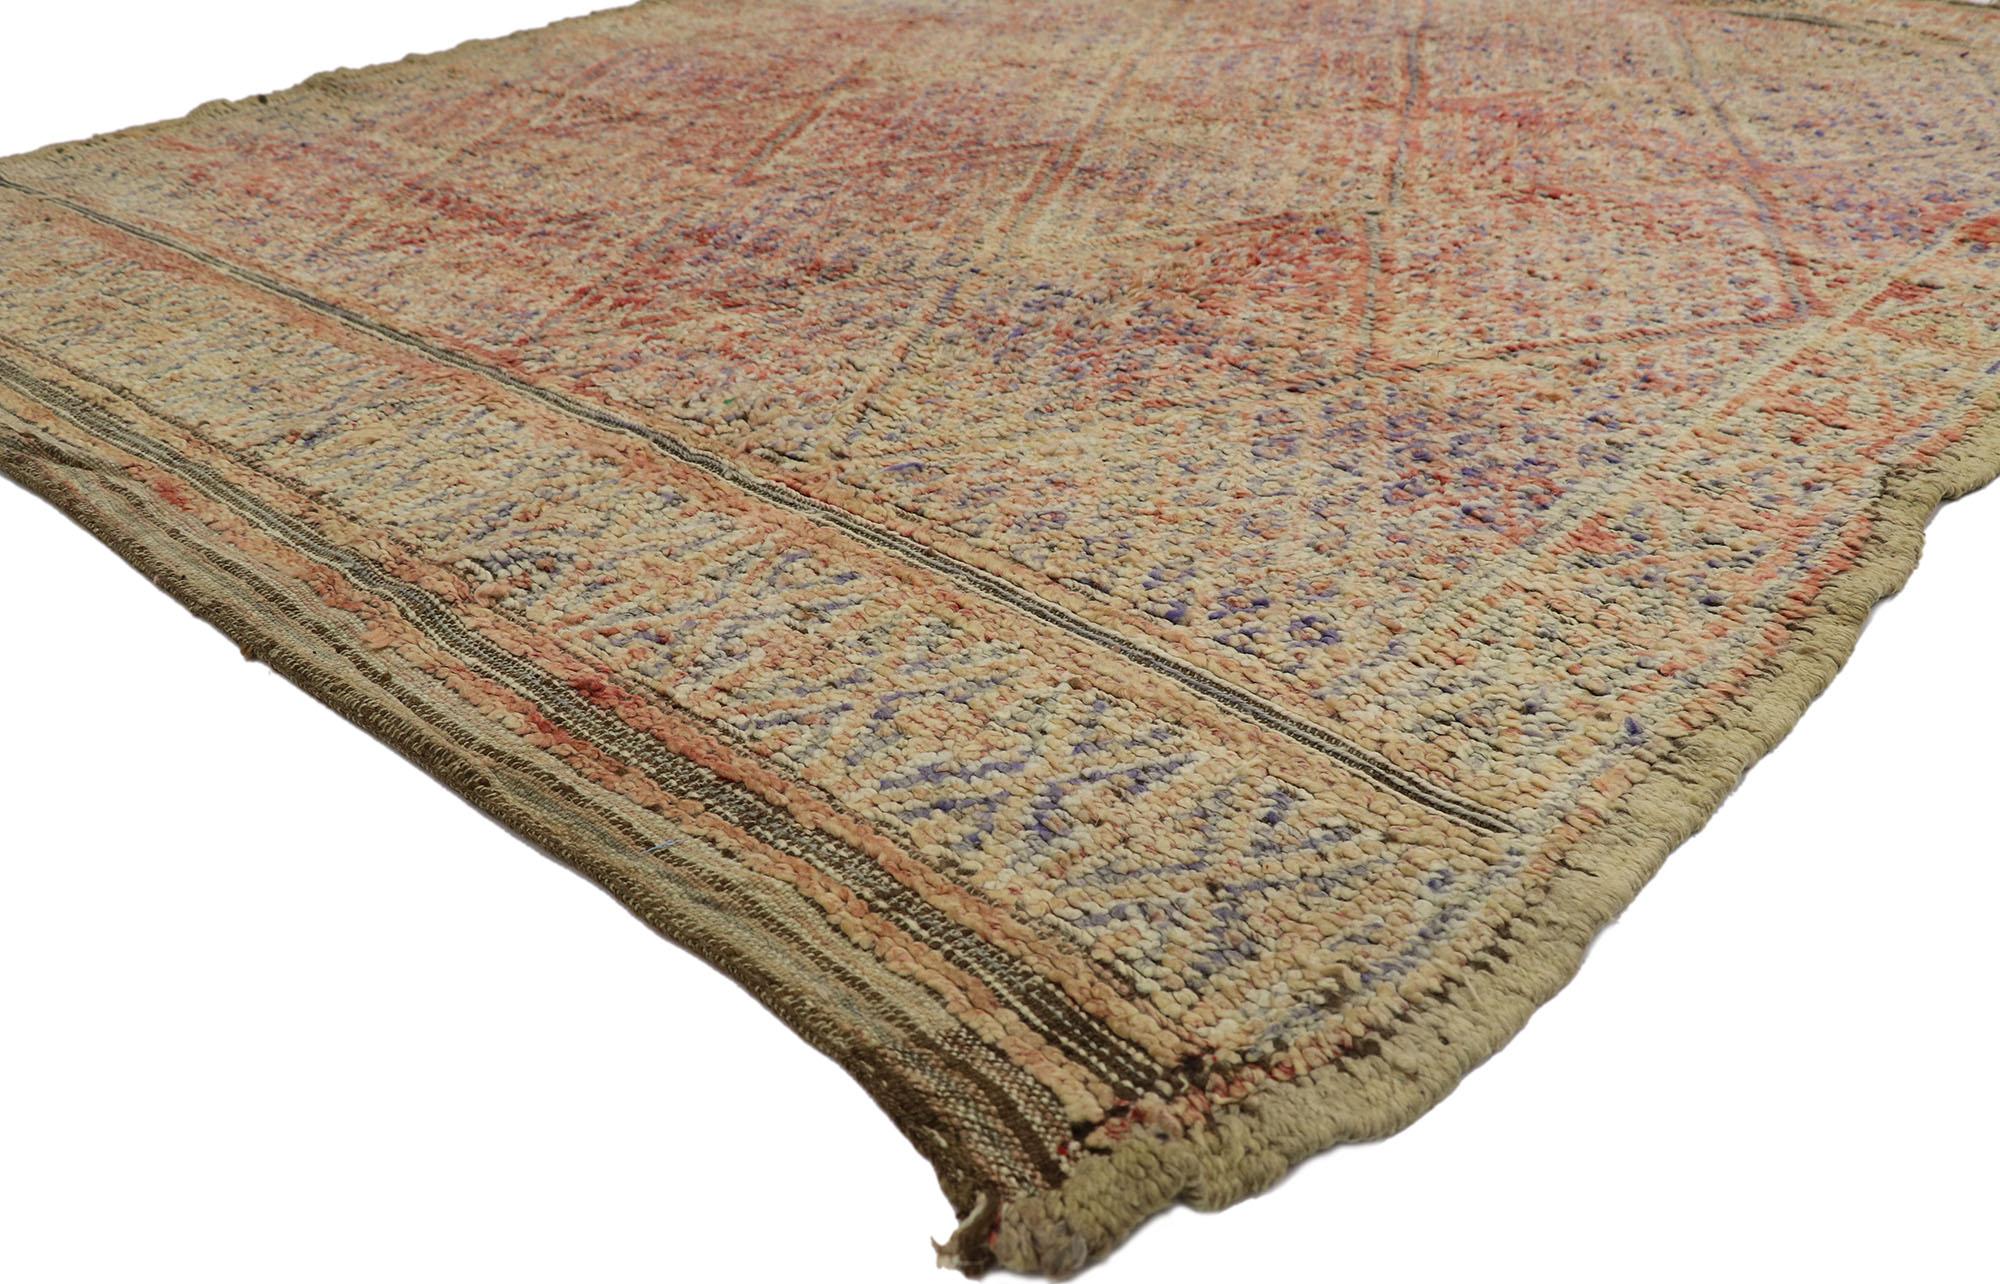 21446 Vintage Beni MGuild Marokkanischer Teppich, 06'09 x 08'05. Die vom Stamm der Beni M'Guild im Mittleren Atlasgebirge Marokkos stammenden Beni M'Guild-Teppiche verkörpern eine geschätzte Tradition, die von erfahrenen Berberfrauen in sorgfältiger